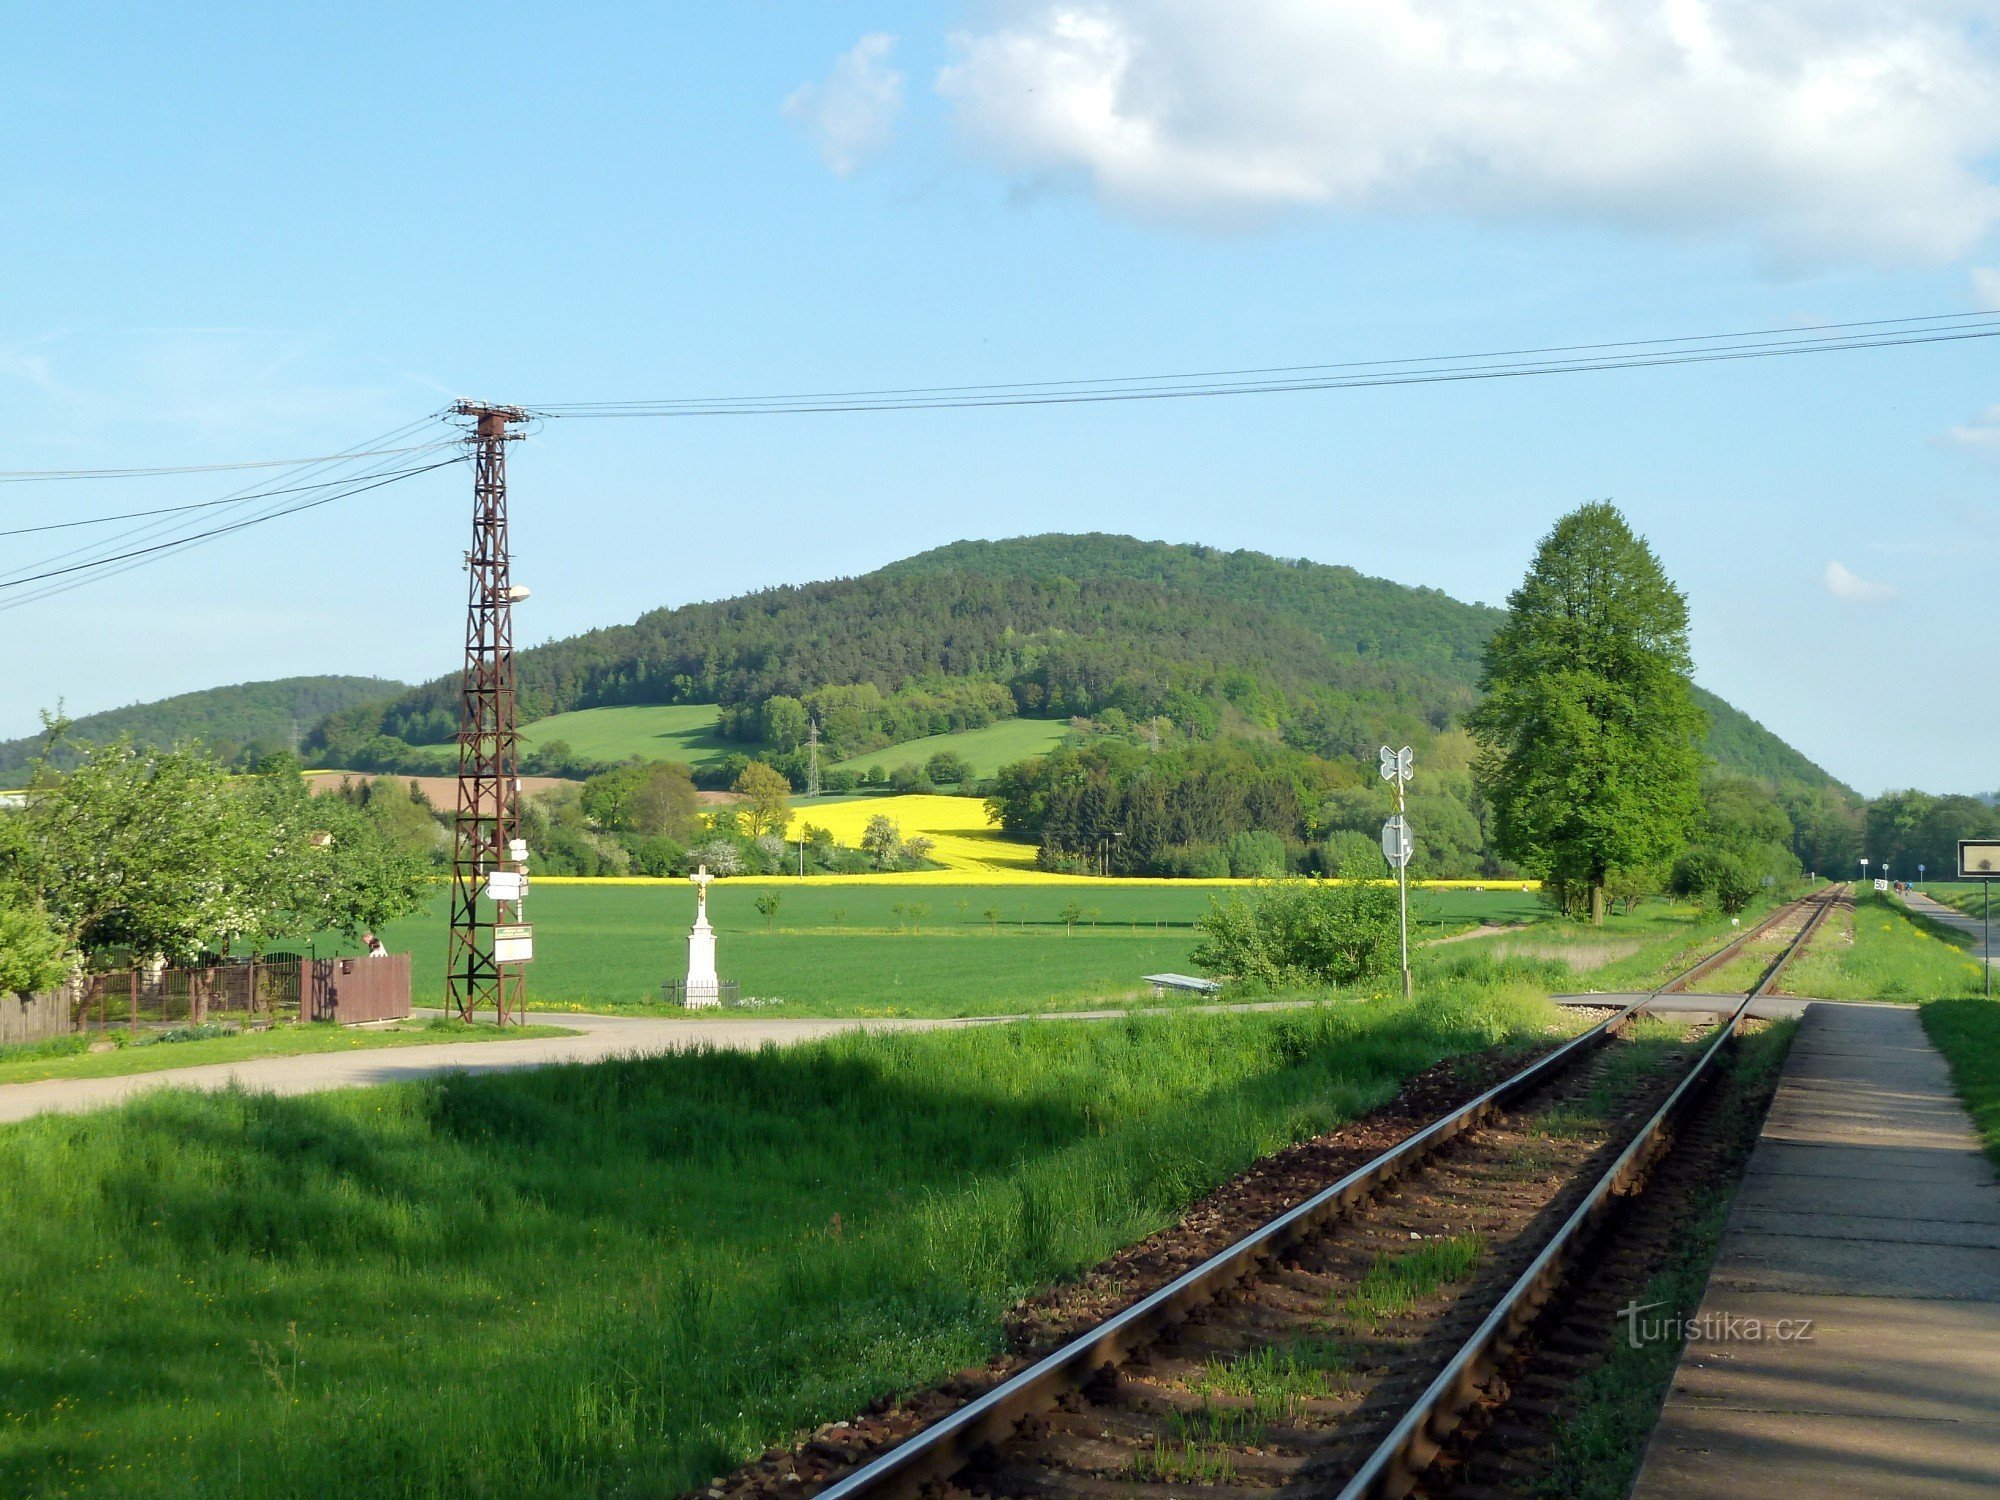 vonatmegálló - kereszteződés az oszlopon a kép bal oldalán